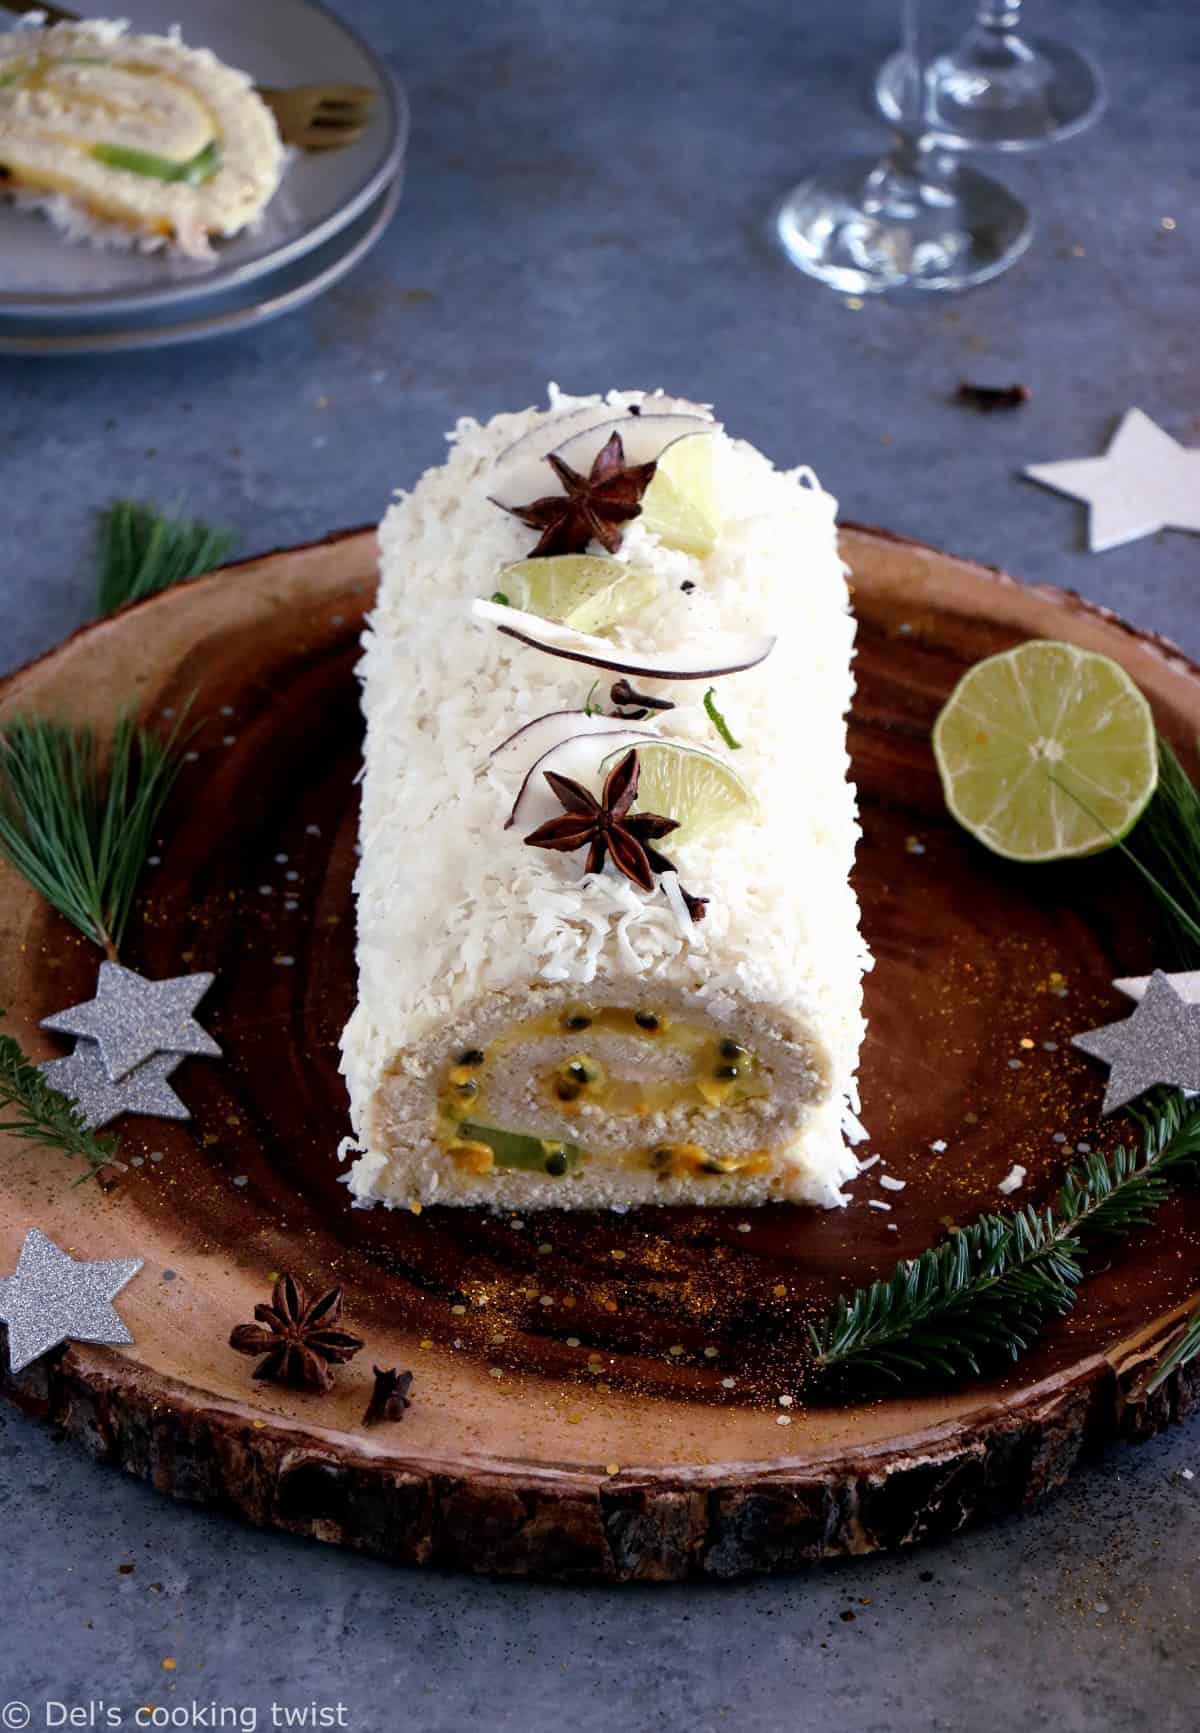 Envolons-nous vers de nouveaux horizons culinaires avec cette bûche mangue-coco aux fruits de la passion. Un Noël très gourmand vous attend.